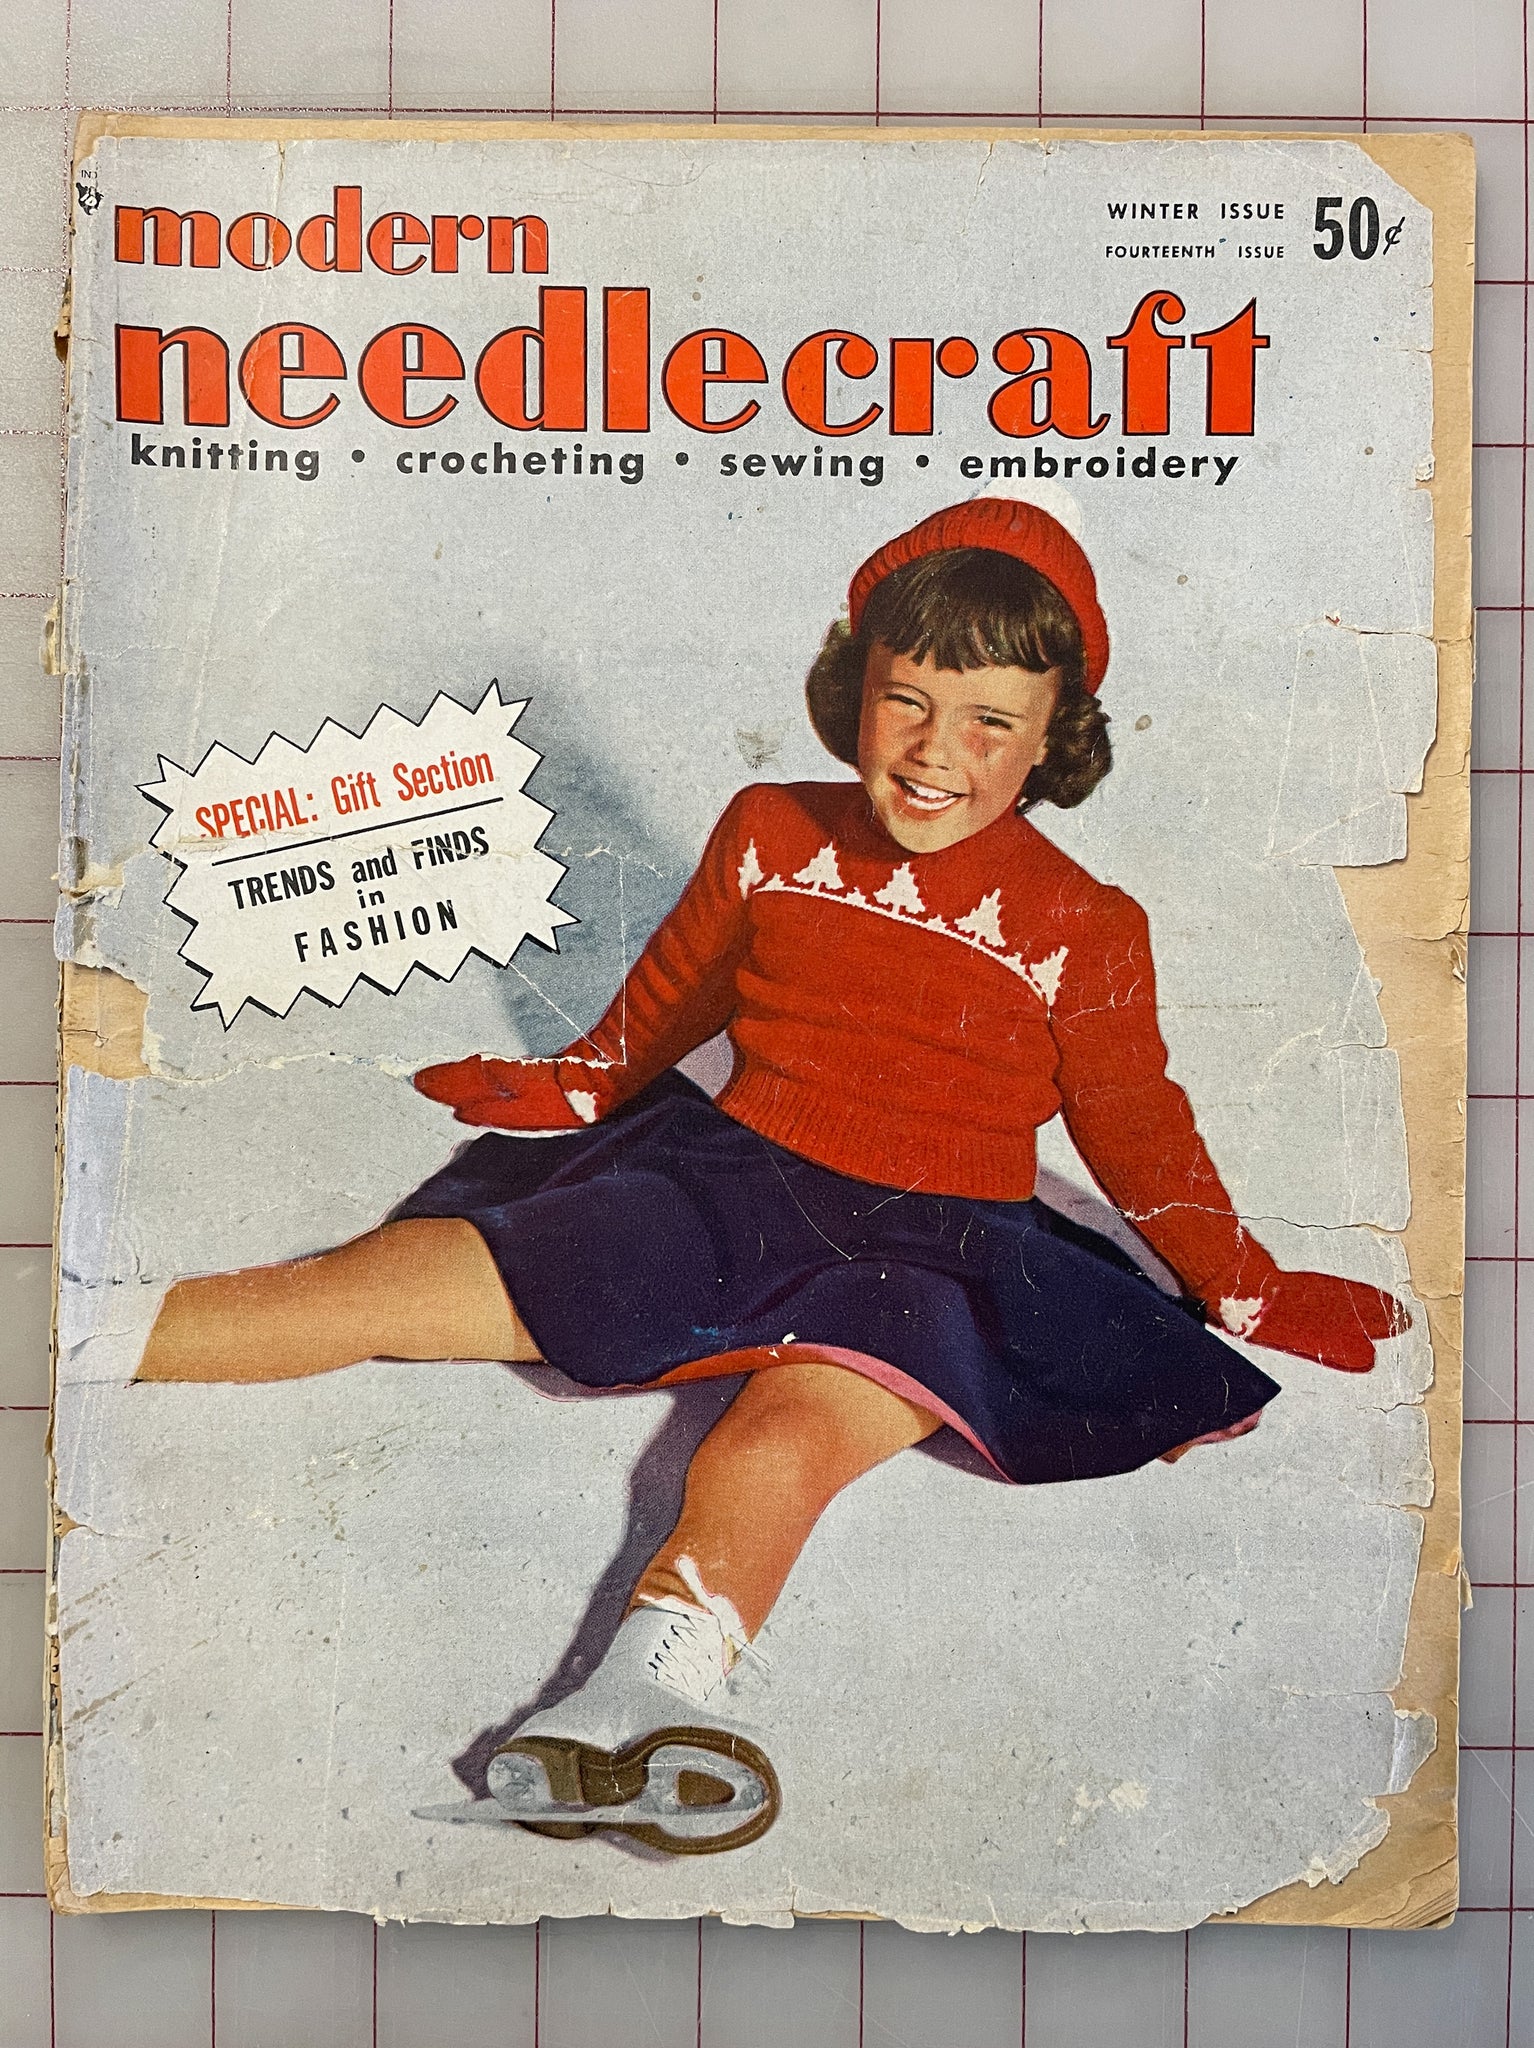 SALE 1957 "Modern Needlecraft" - Winter Issue